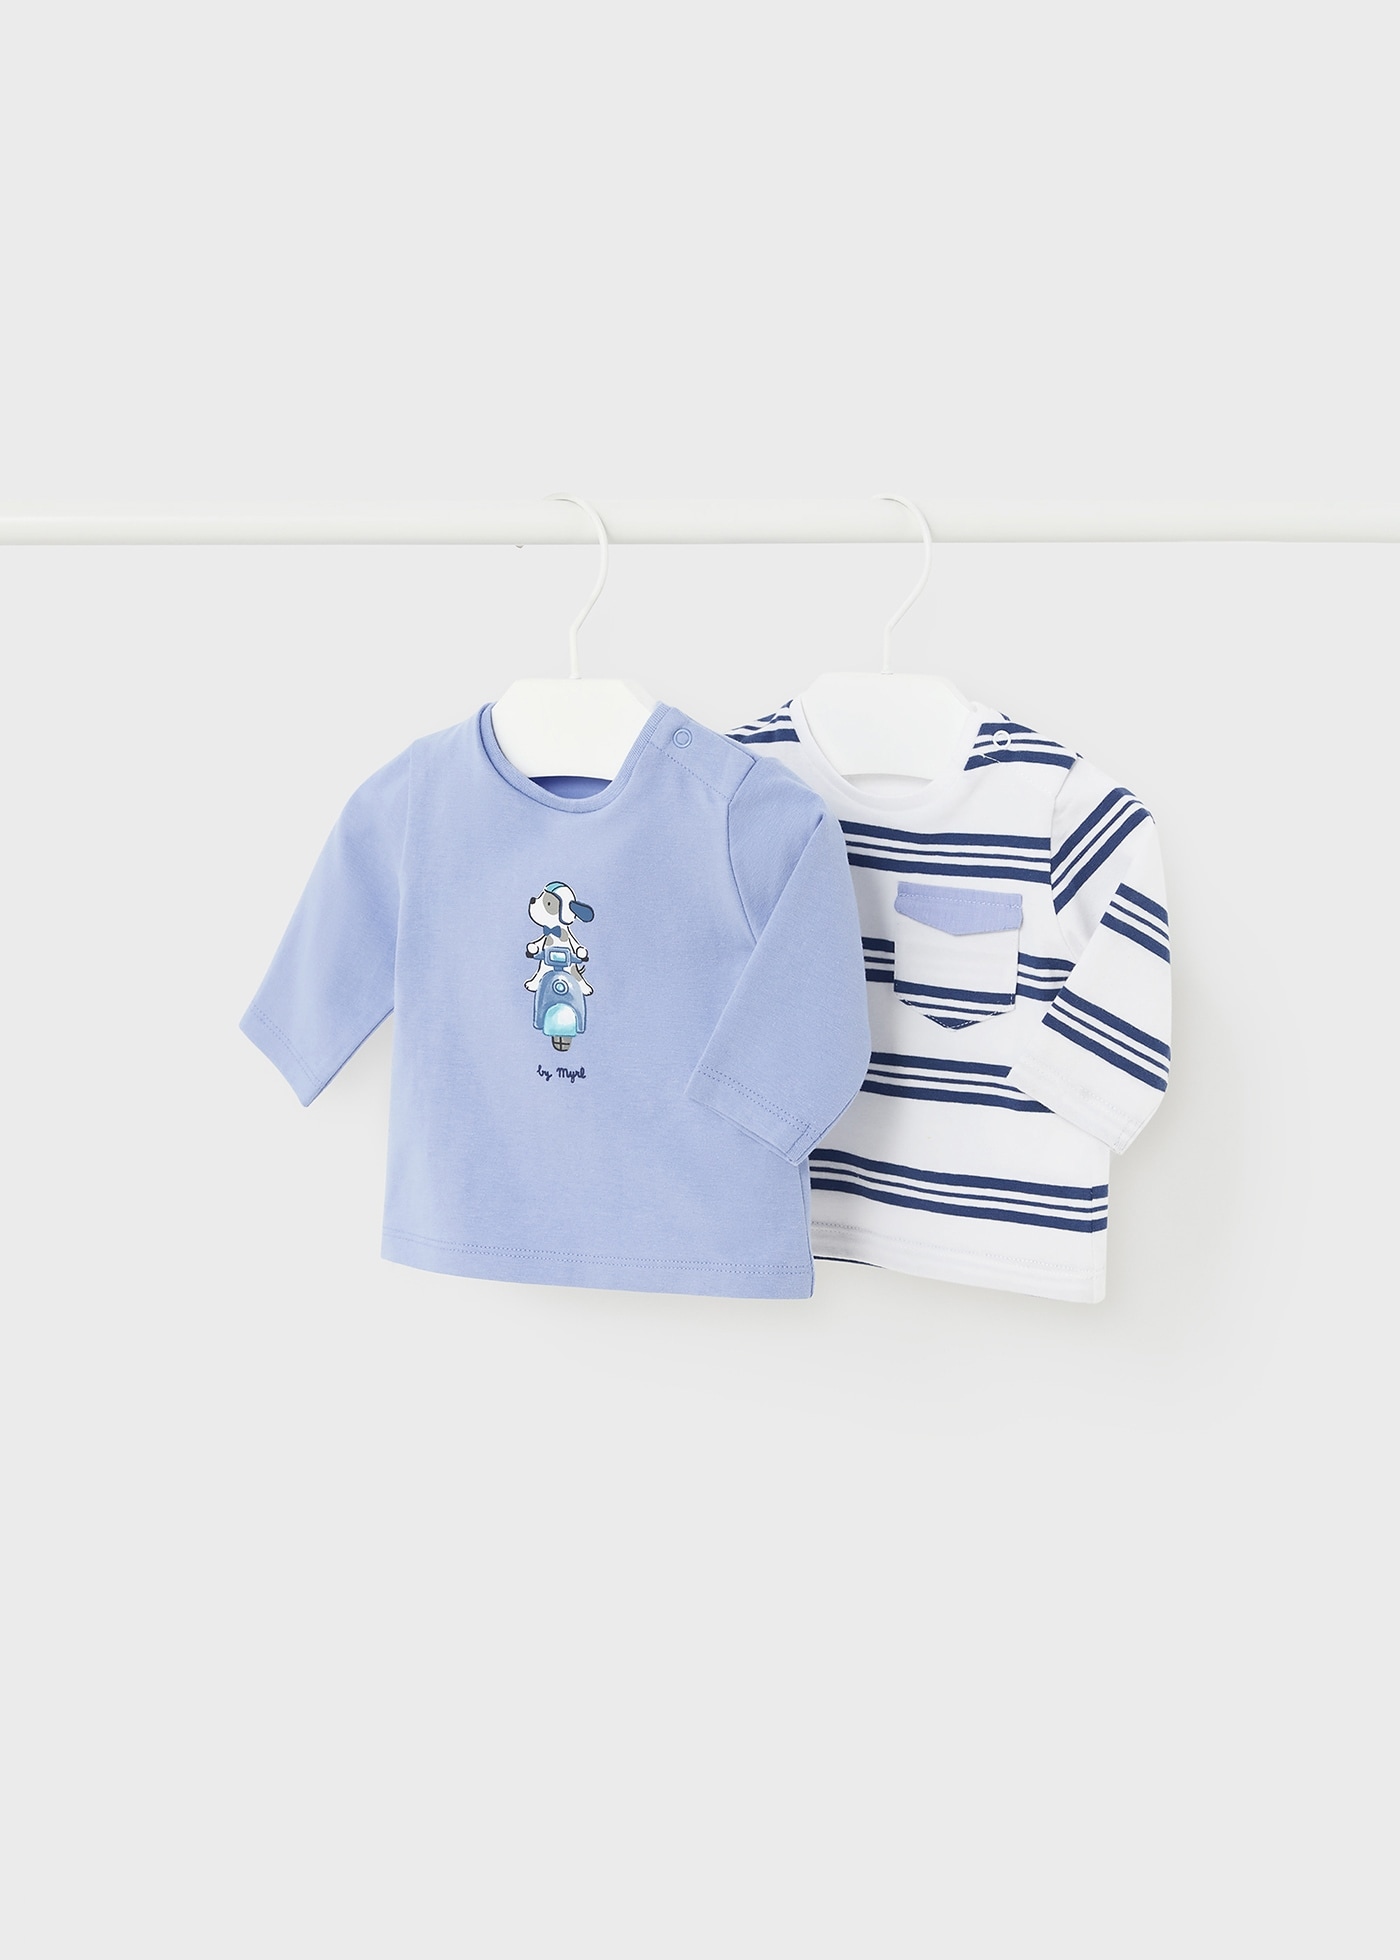 Newborn Set of 2 Long Sleeved Shirts Better Cotton